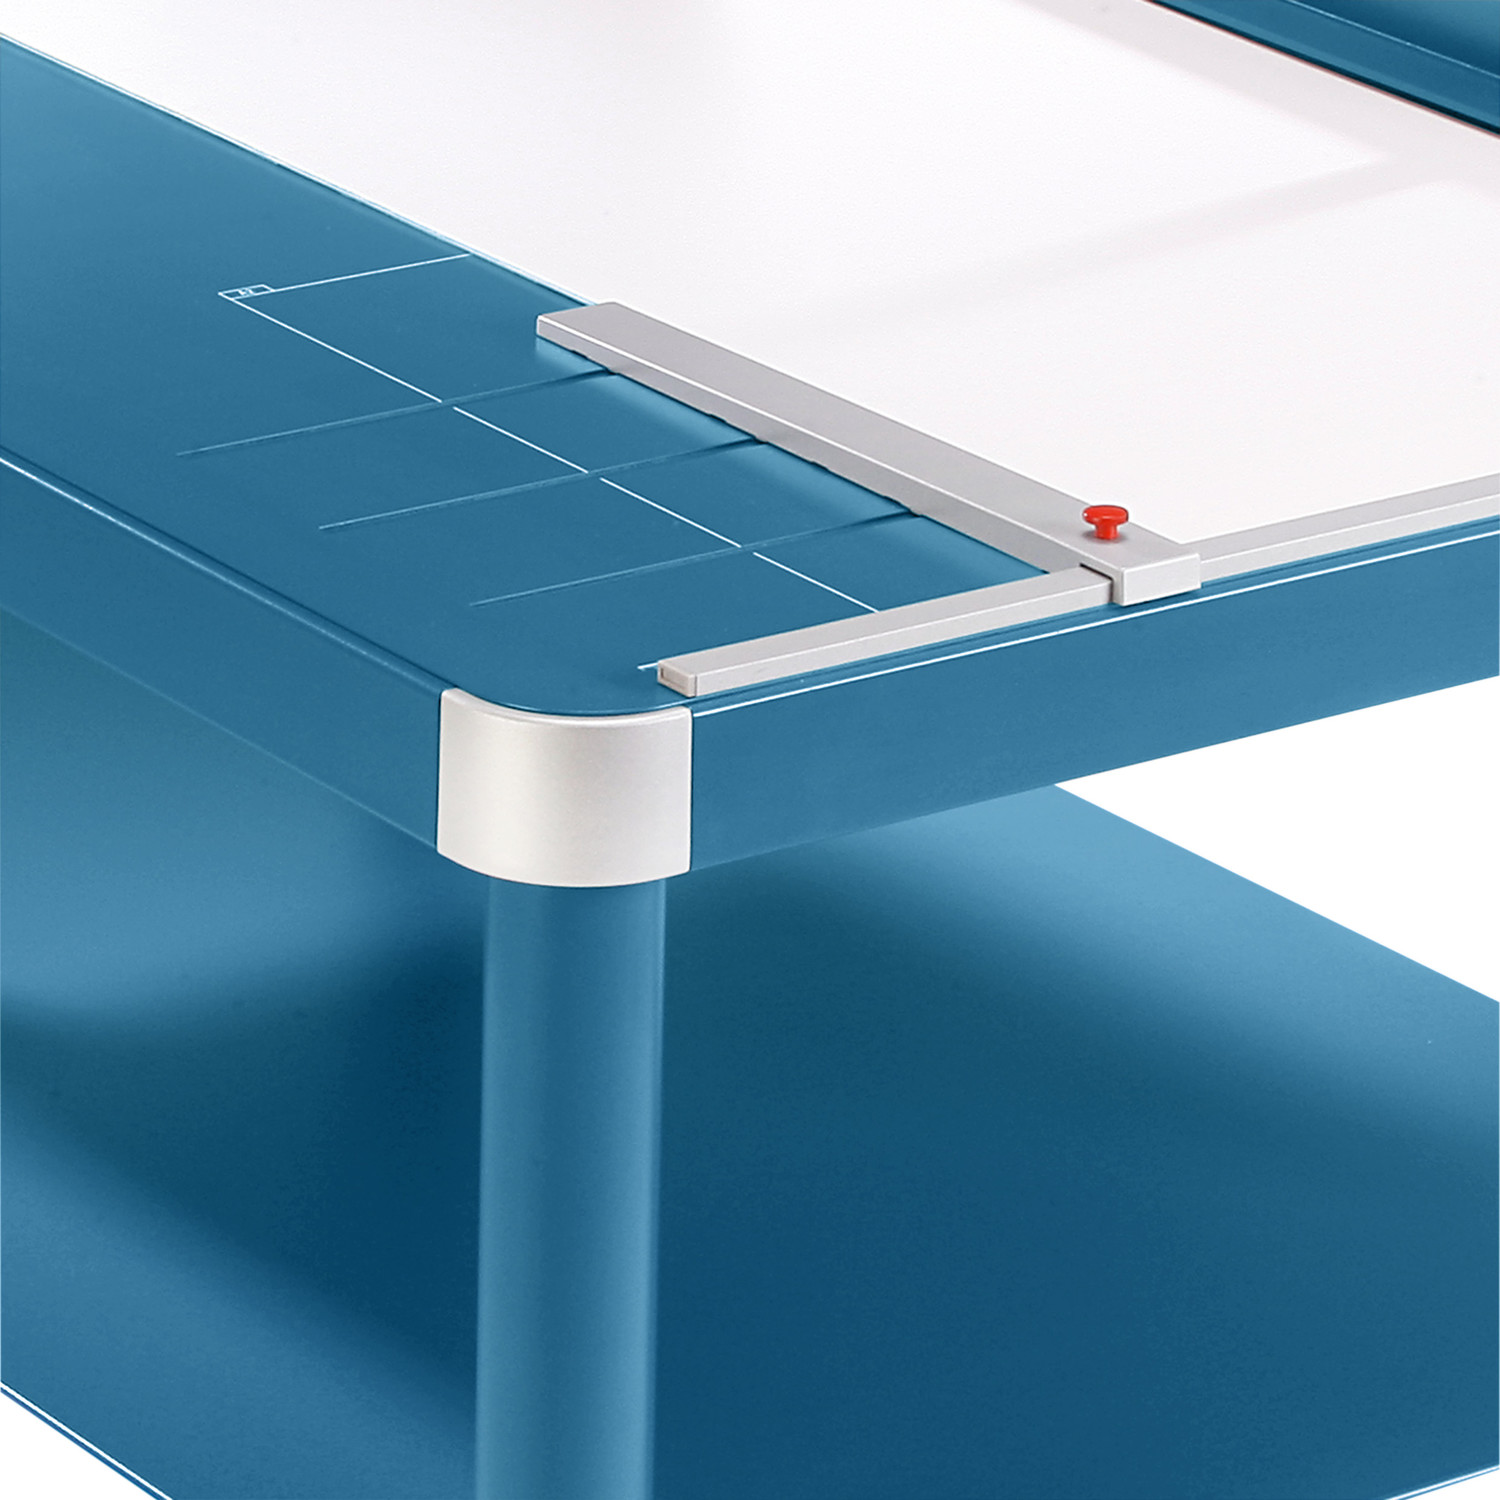 Tope posterior regulable de metal para la detección rápida del formato, aplicable en ambos topes angulares y en la mesa delantera